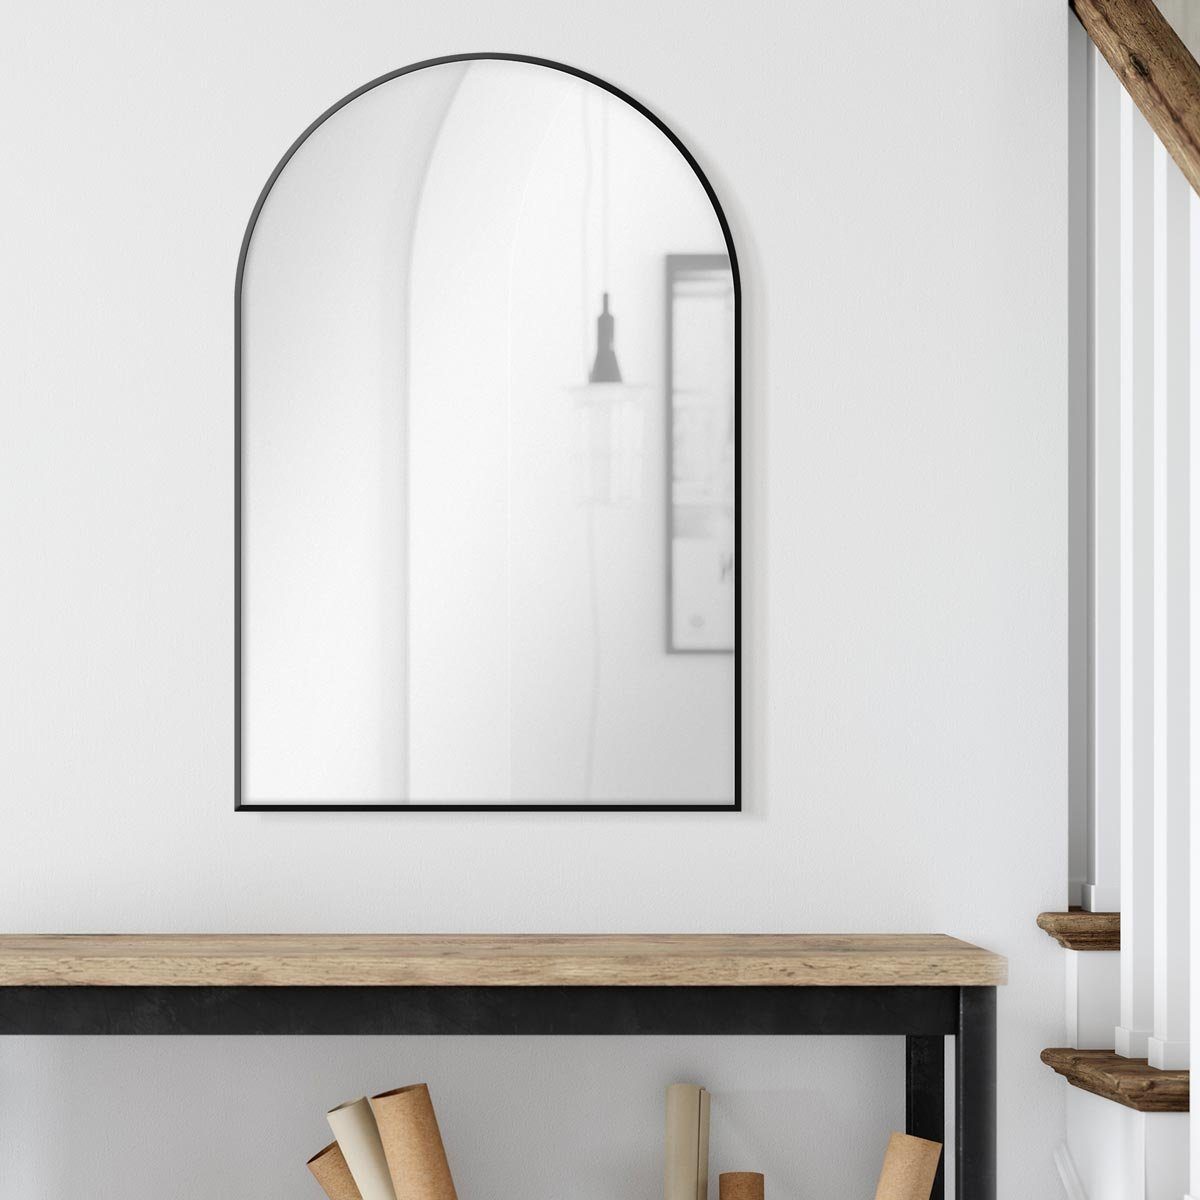 PHOTOLINI Spiegel mit Metallrahmen, Wandspiegel halbrund, cm Rahmen 50x75 schmaler Schwarz